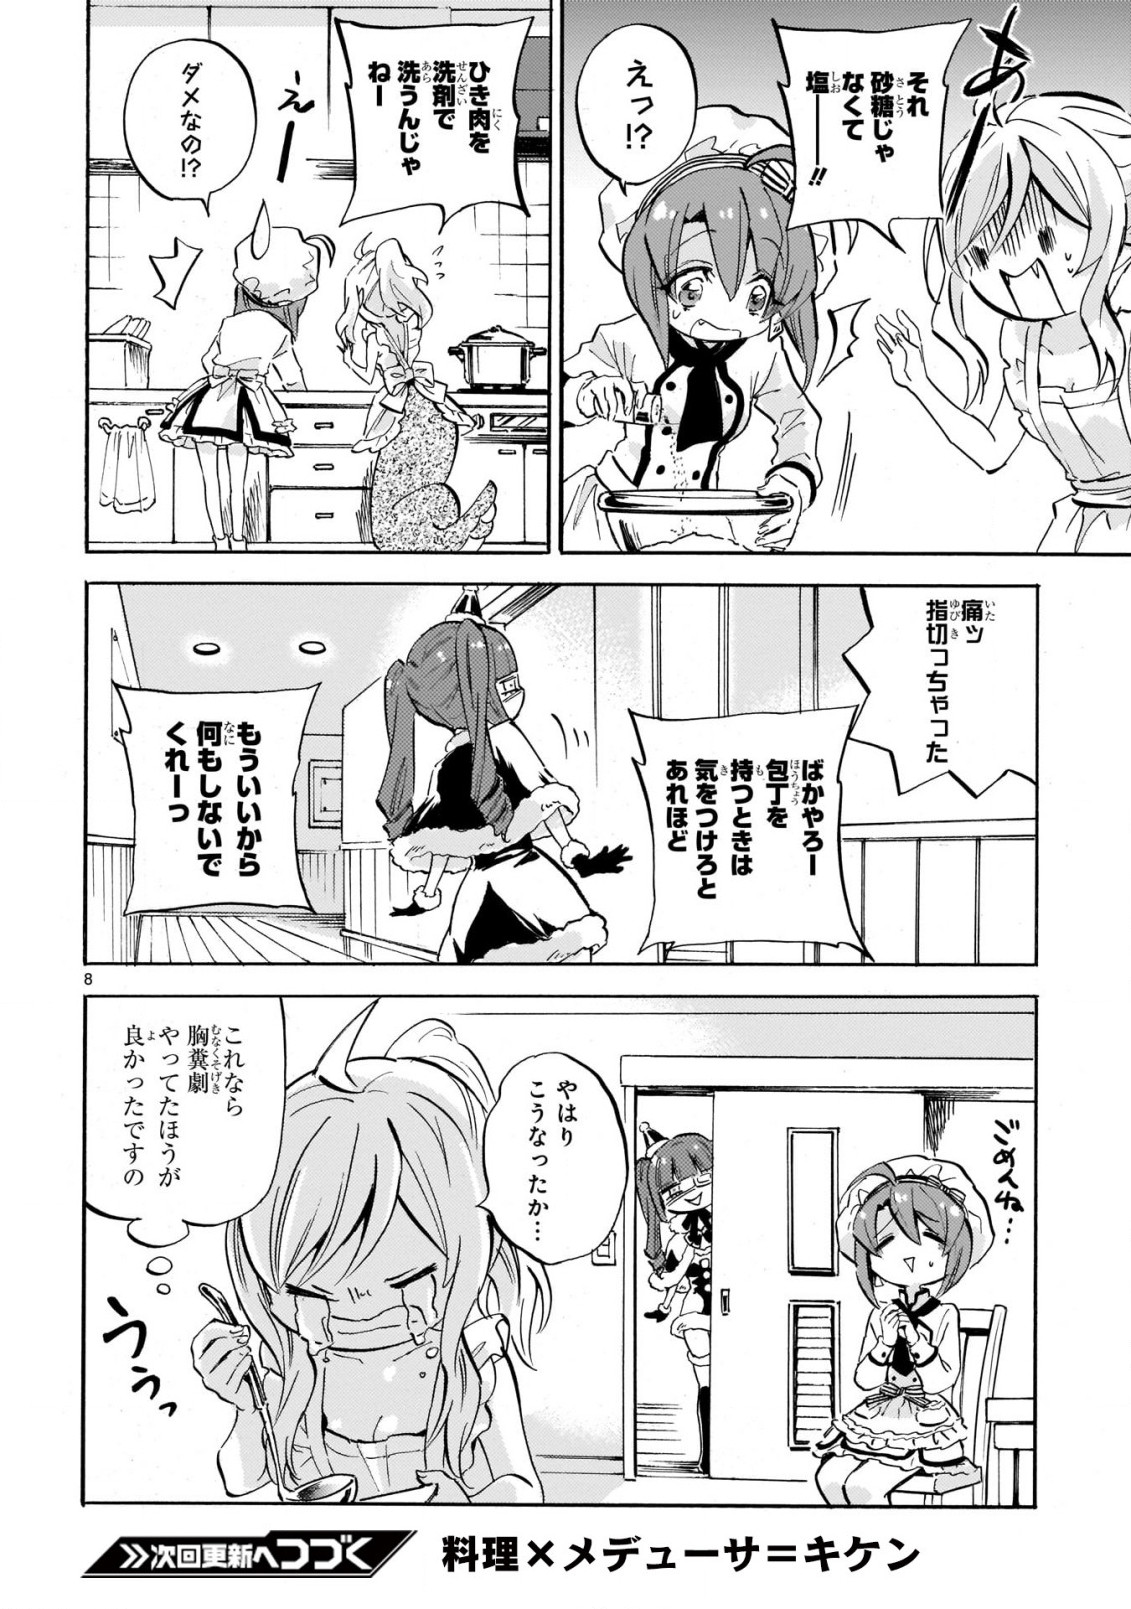 Jashin-chan Dropkick - Chapter 225 - Page 9